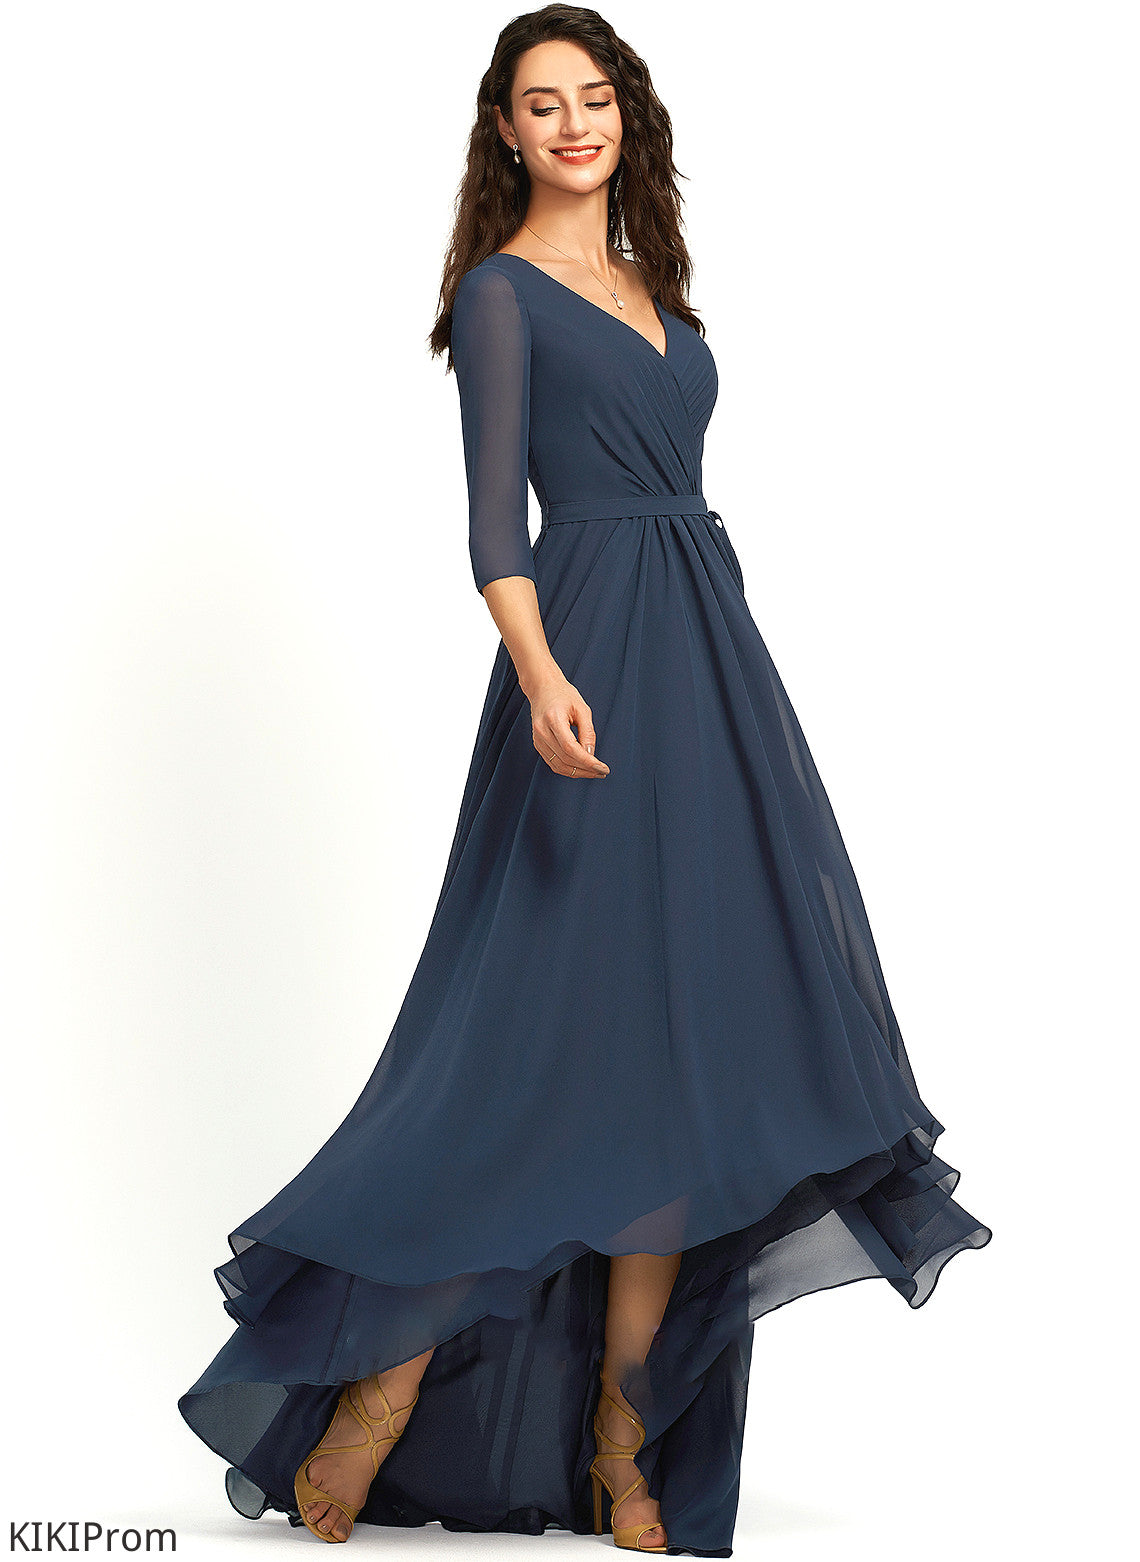 Neckline Fabric Embellishment Silhouette Asymmetrical Pleated V-neck Length A-Line Maia Bridesmaid Dresses